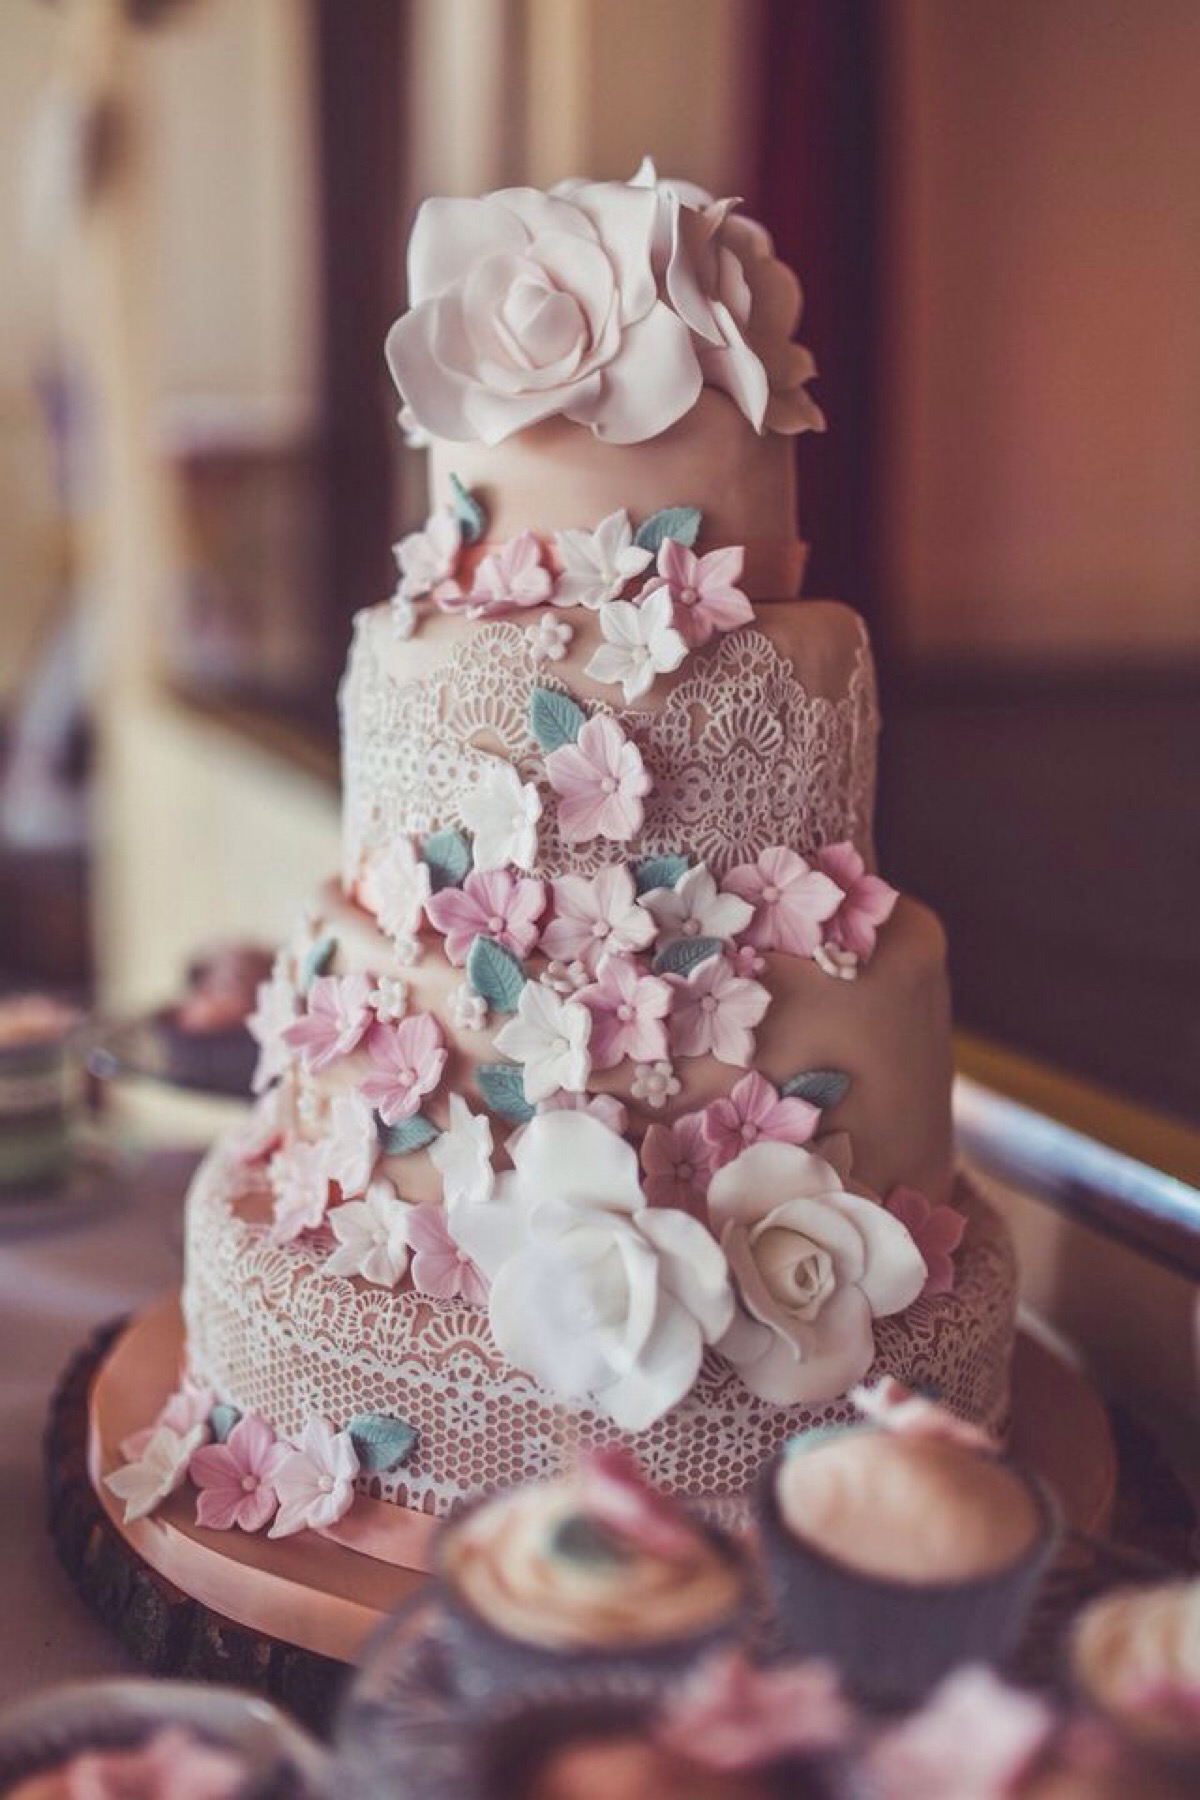 蛋糕婚礼 库存图片. 图片 包括有 空白, 蜡烛, 结冰, 蛋糕, 淡紫色, 玫瑰, 接收, 婚礼, 紫色 - 16123281